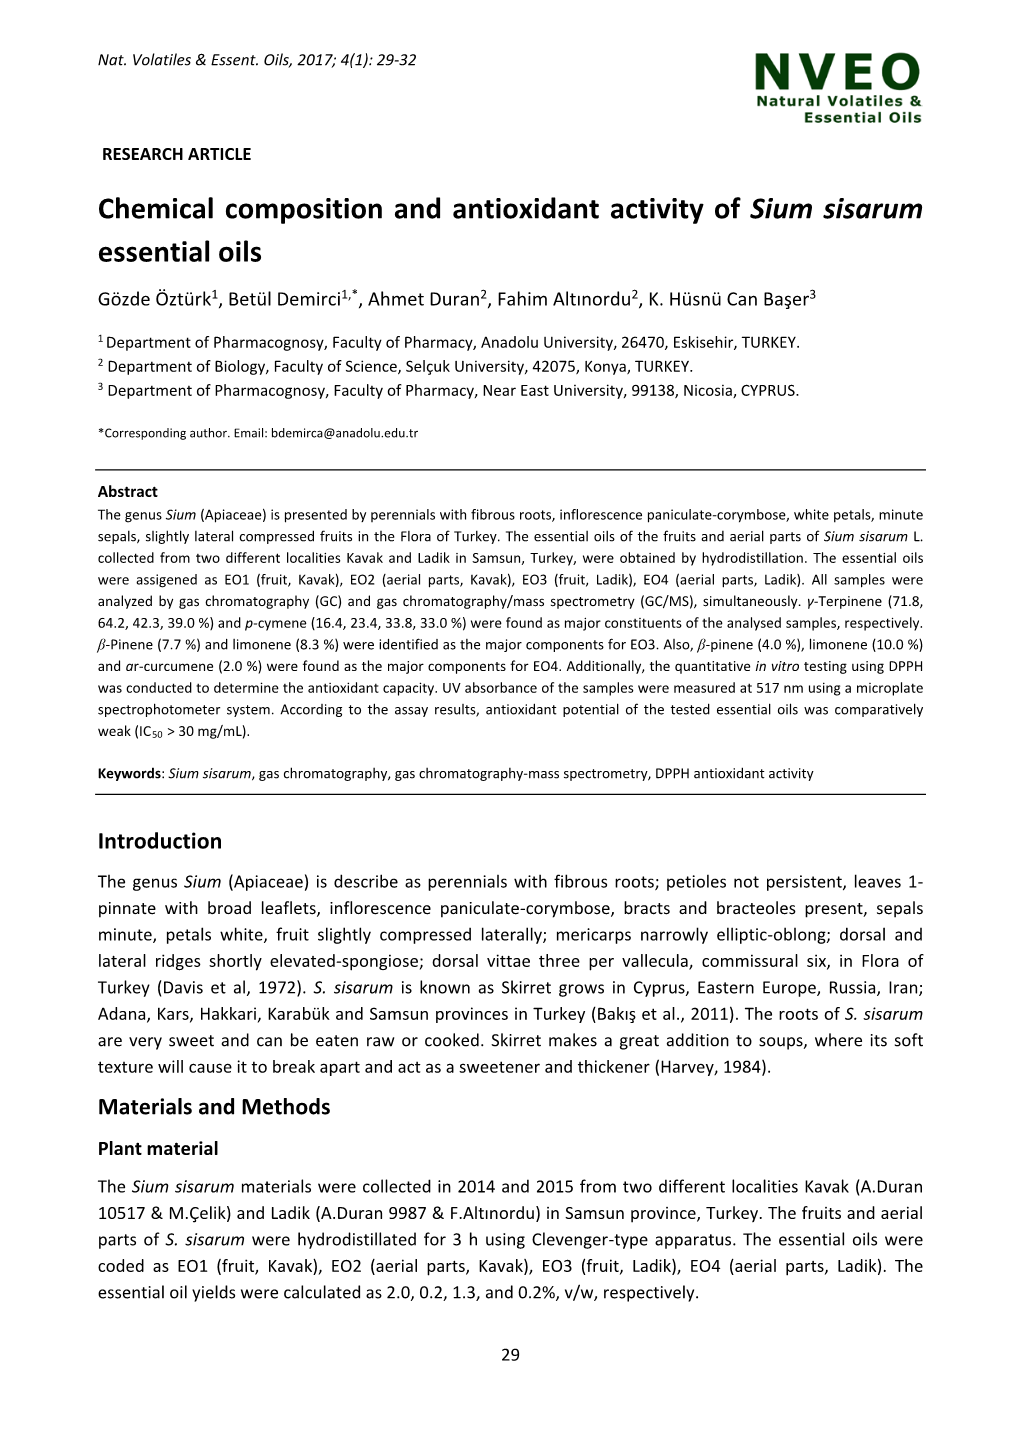 Chemical Composition and Antioxidant Activity of Sium Sisarum Essential Oils Gözde Öztürk1, Betül Demirci1,*, Ahmet Duran2, Fahim Altınordu2, K